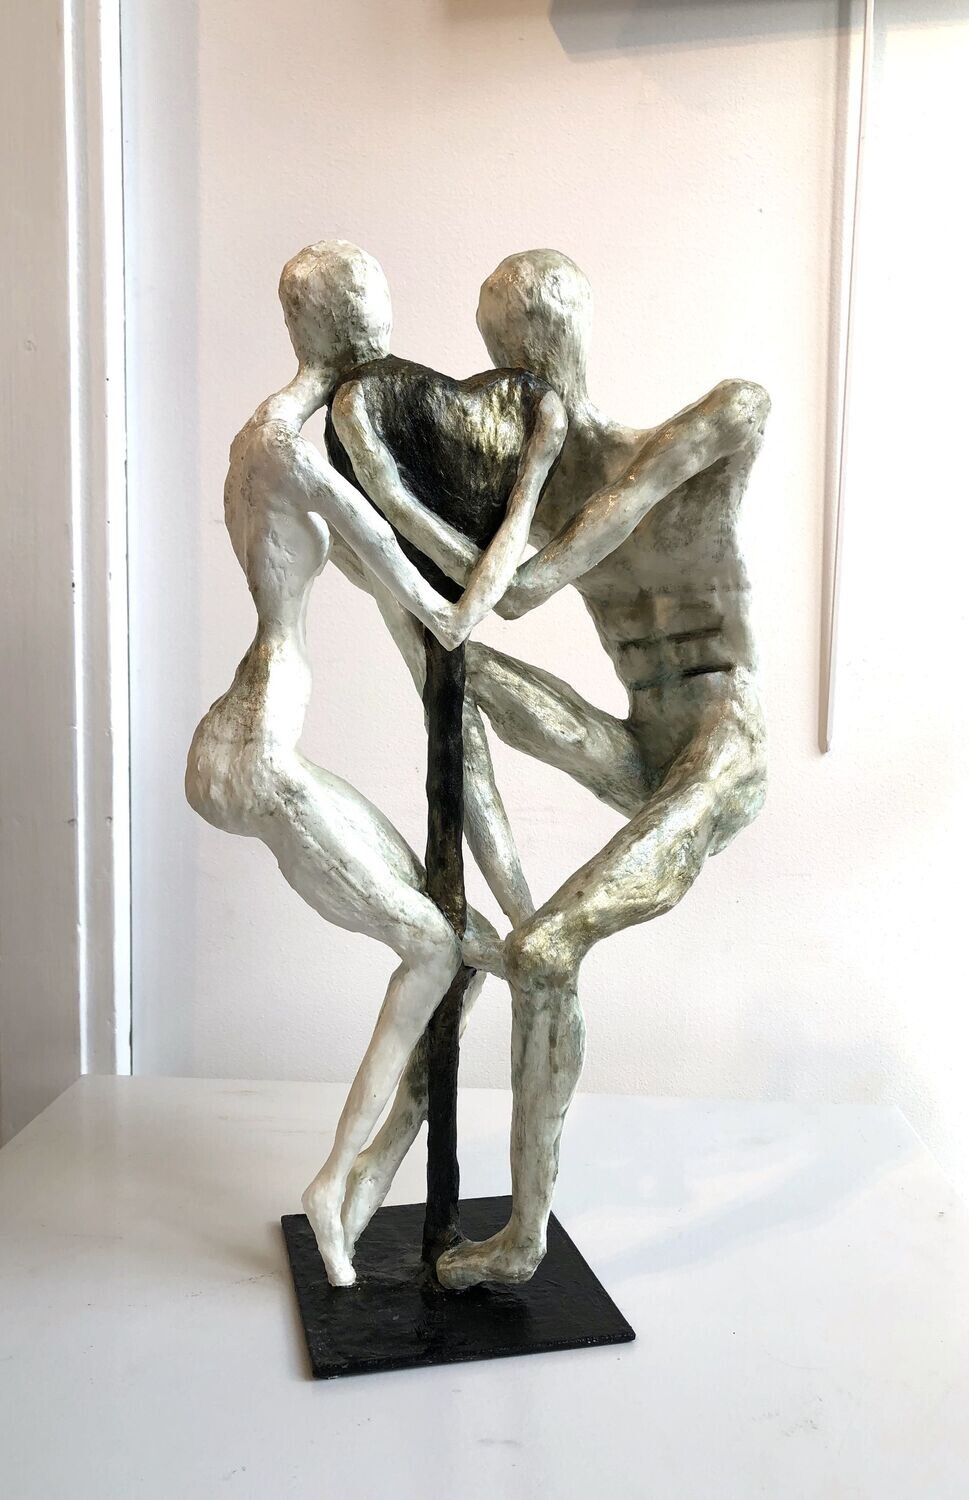 "Amour".
Sculpture env 50cm de haut sur support métal.
Amalgame divers matériaux, résines, pigments naturels.
Artiste "Ignara".